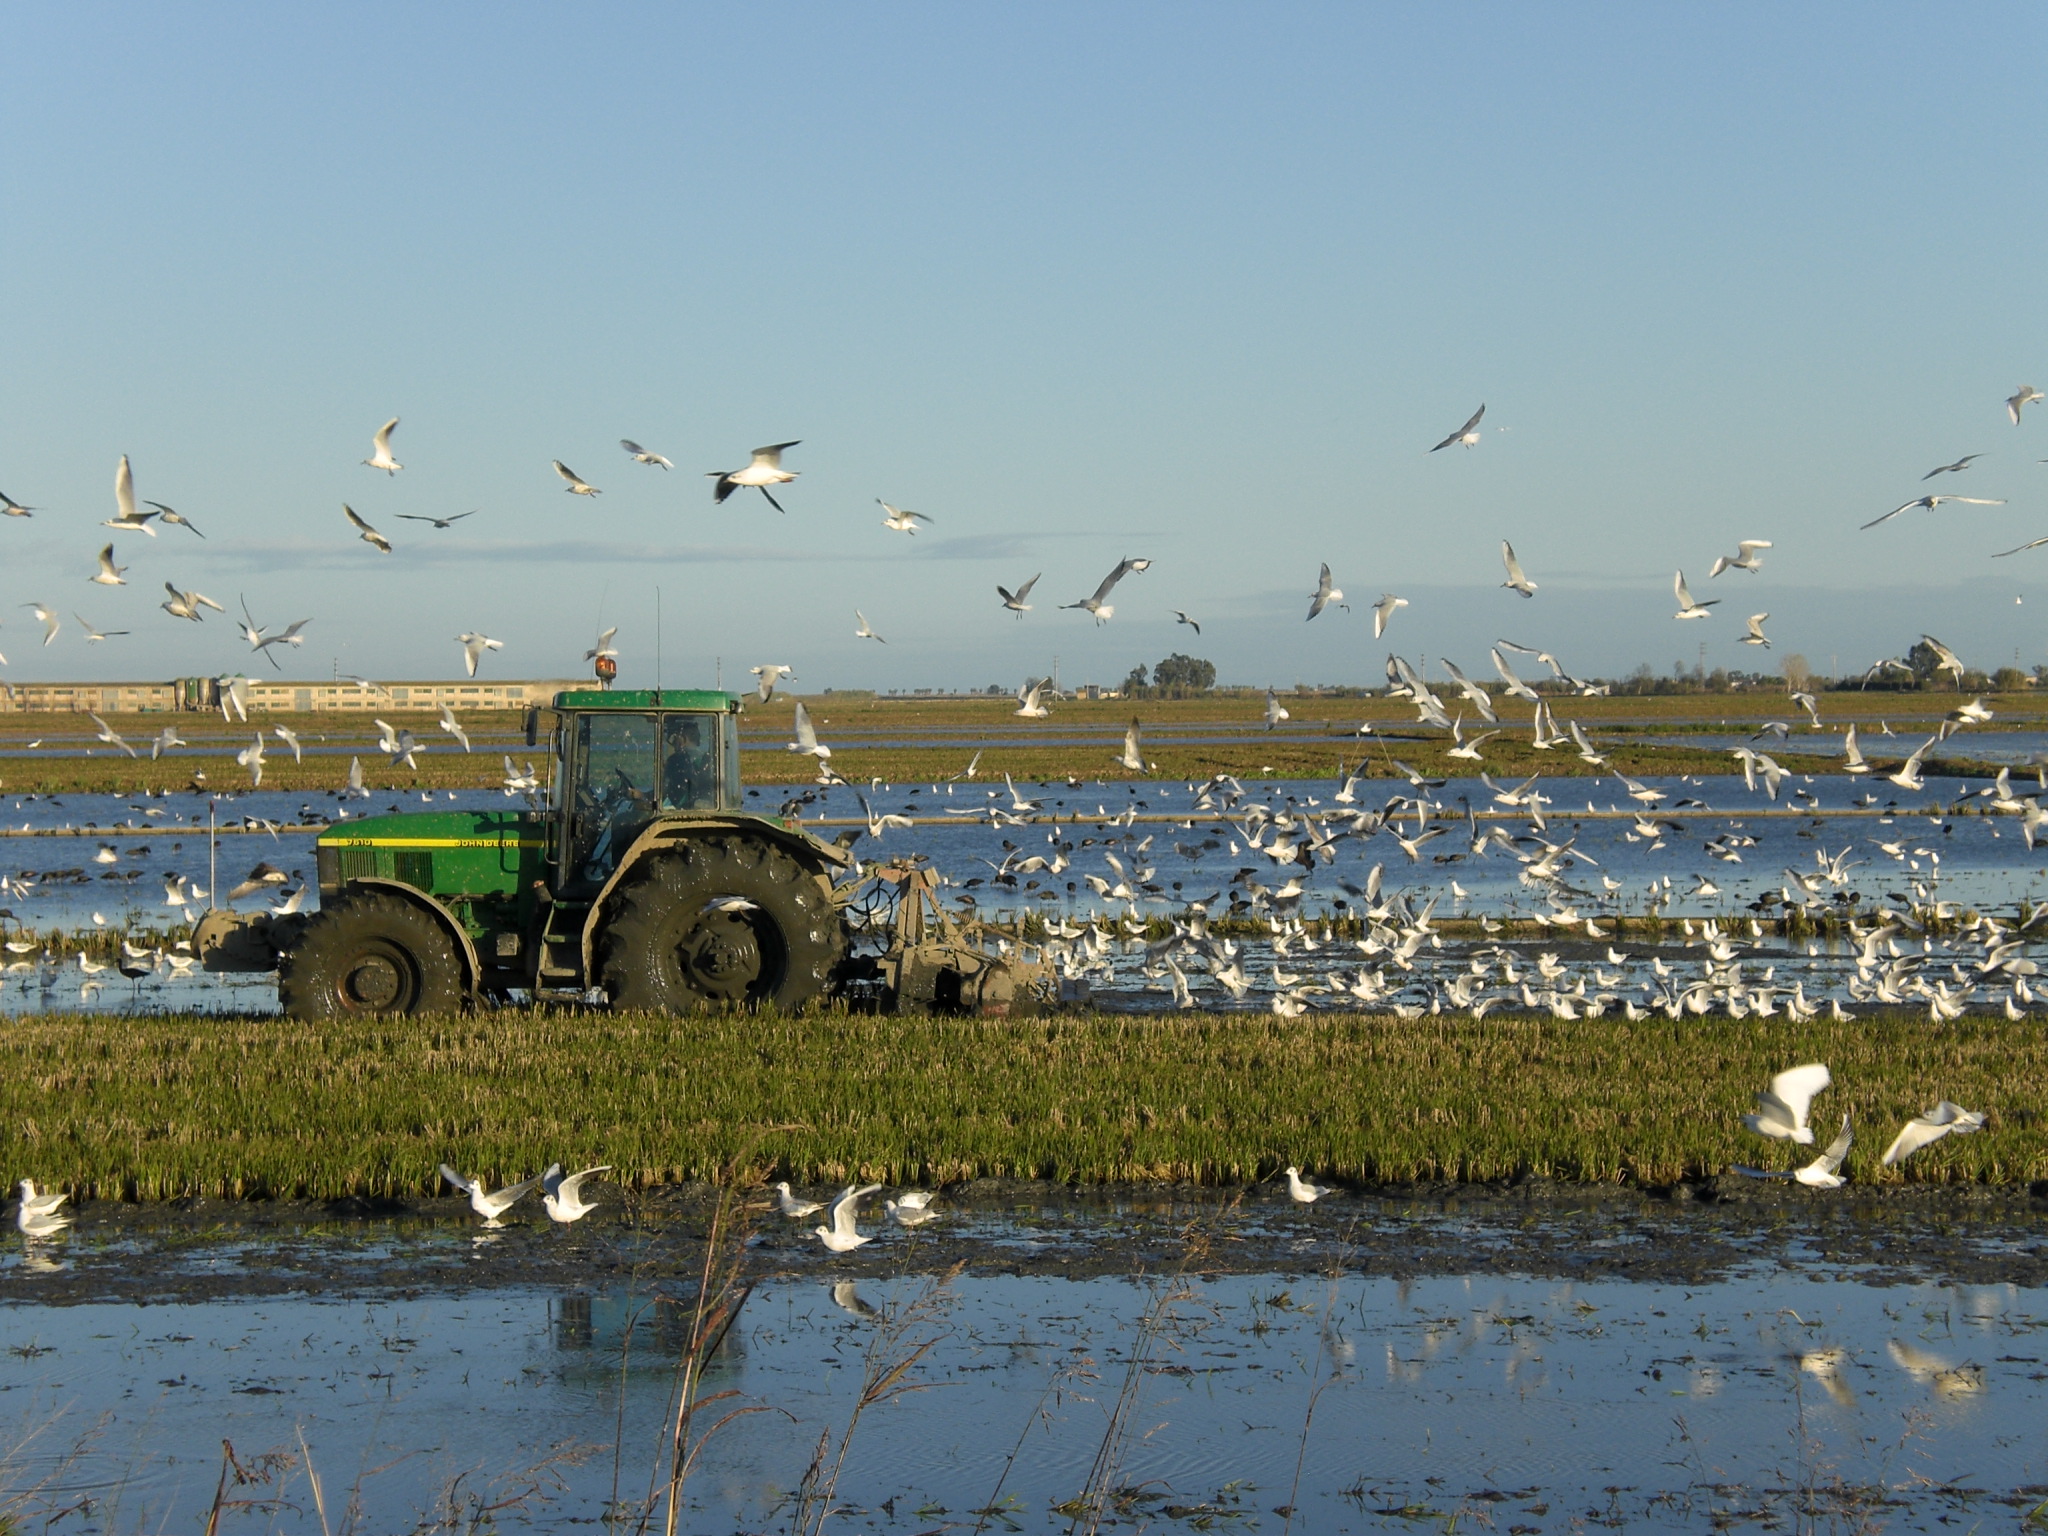 El tractor pasando por el campo de arroz con los pájaros volando encima